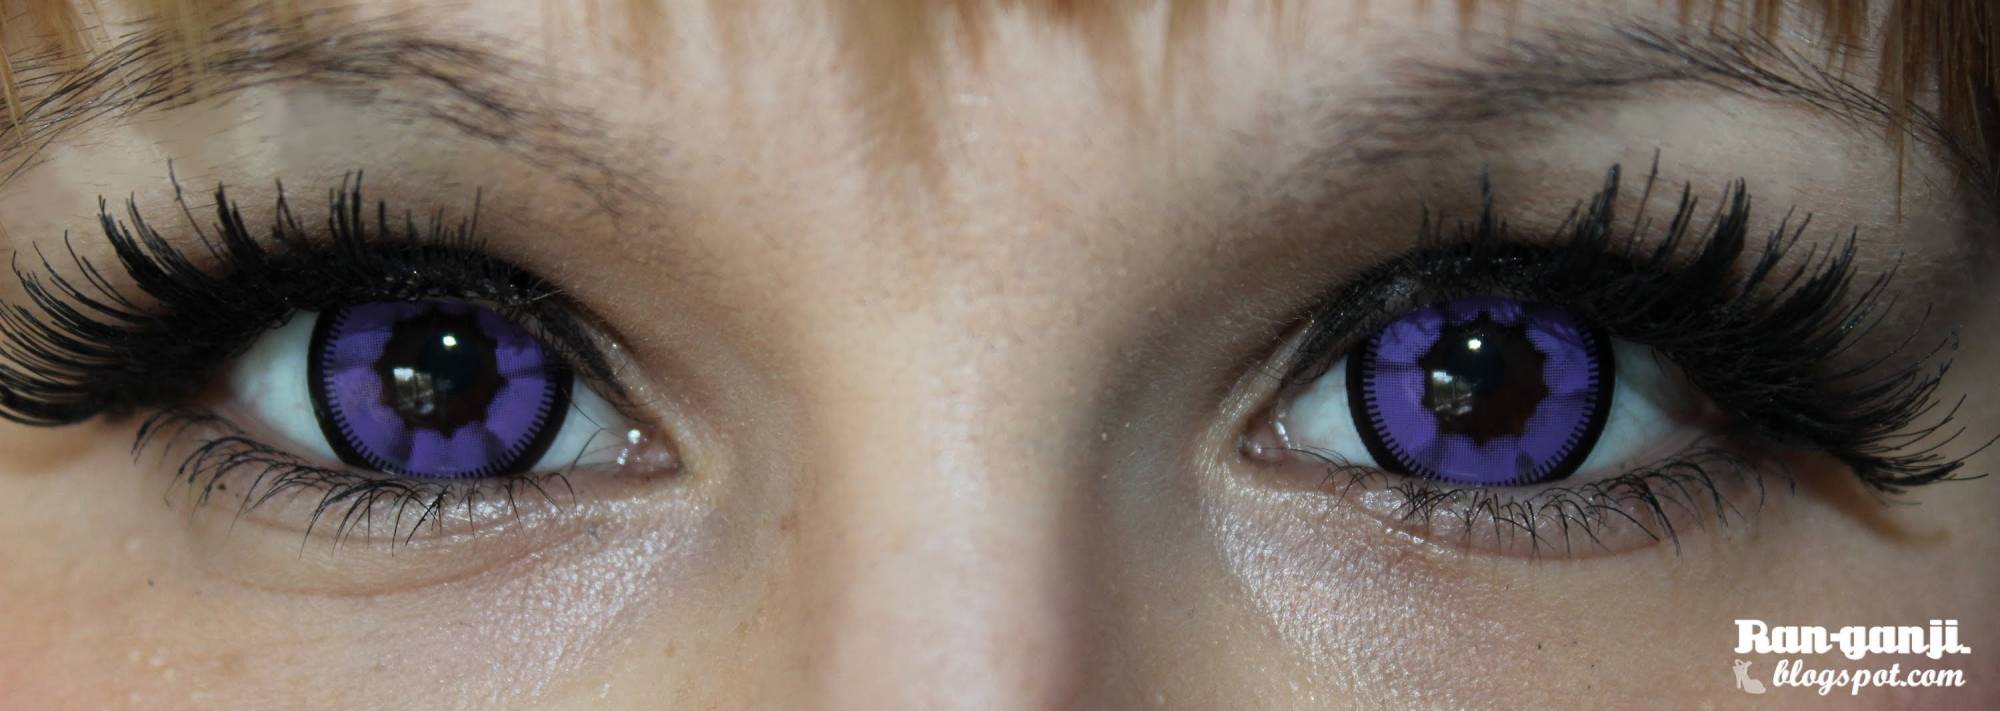 Как подобрать оттеночные линзы? какие подходят для карих глаз? отзывы потребителей